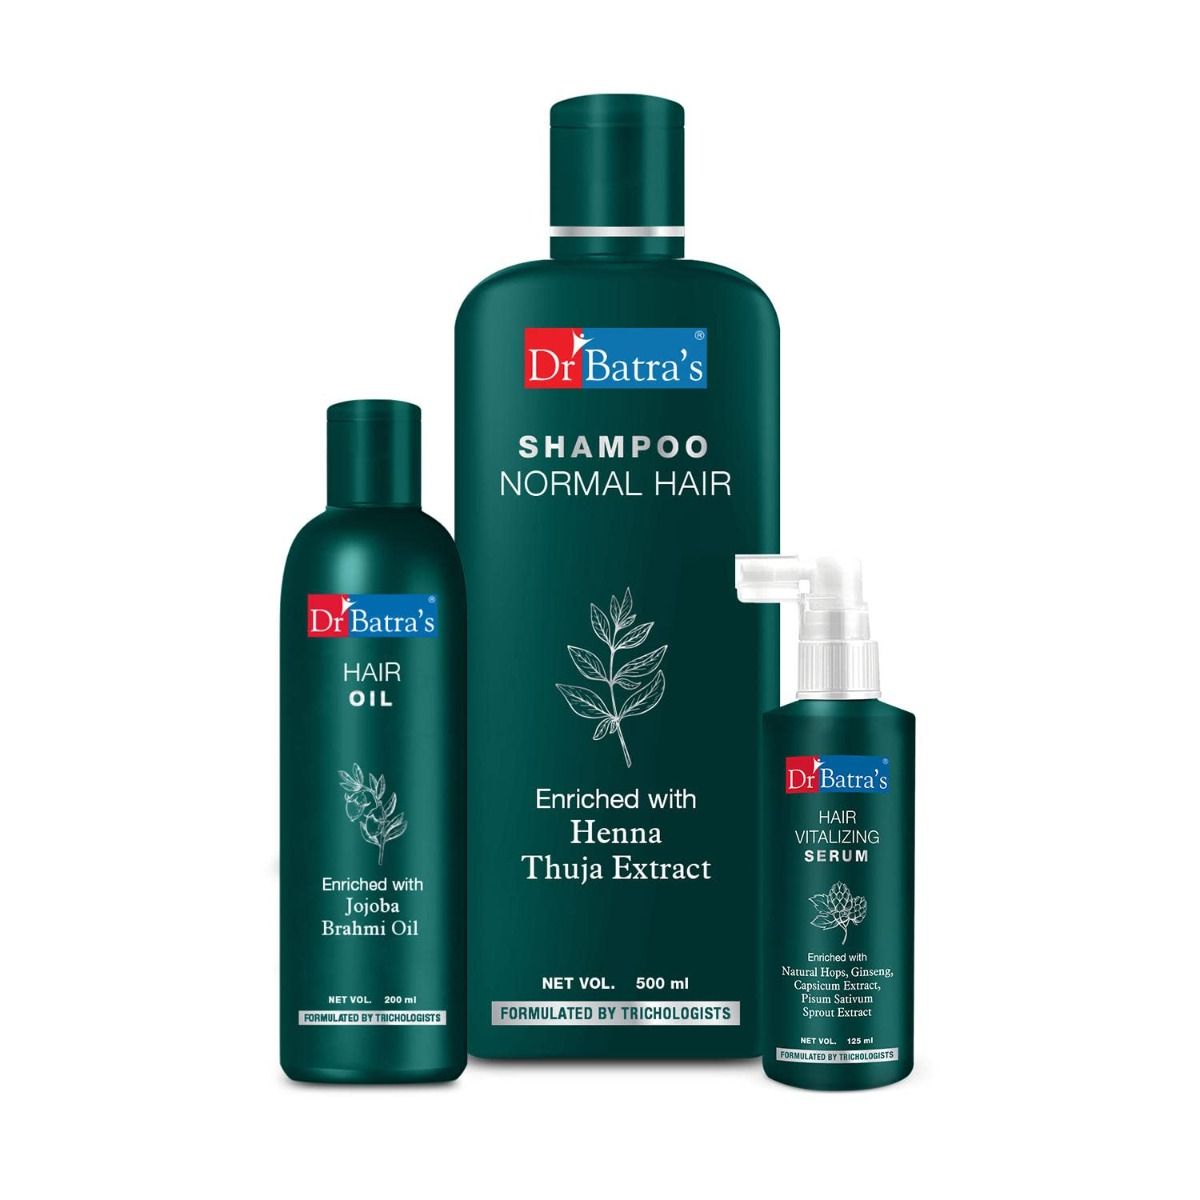     			Dr Batra's Hair Vitalizing Serum 125 ml, Normal Shampoo - 500 ml and Hair Oil - 200 ml